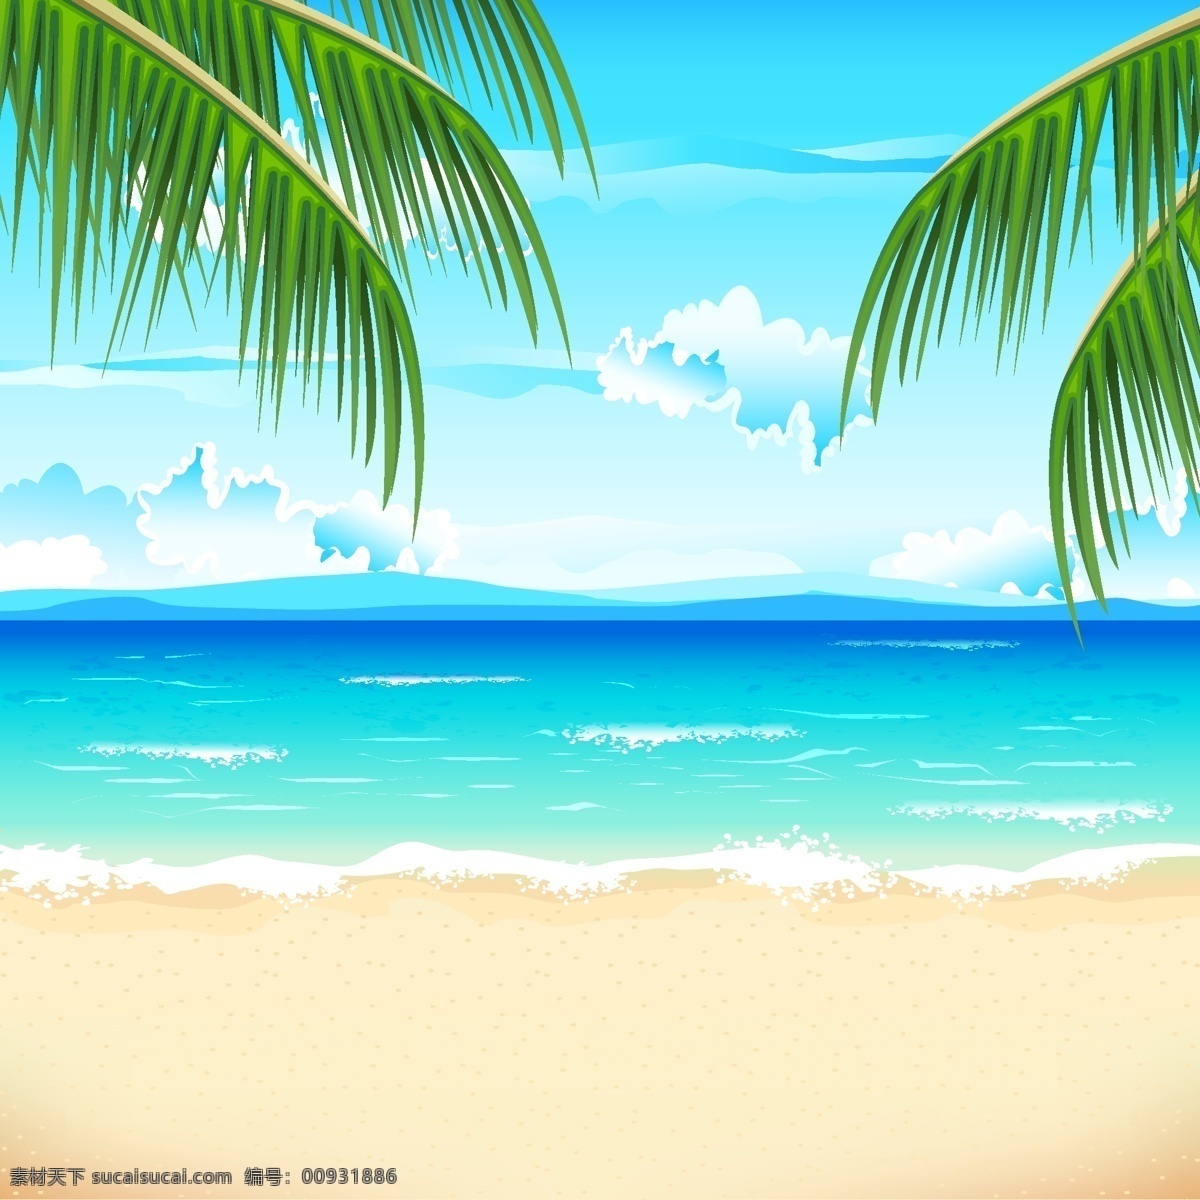 蓝天 白云 海洋 风景 海滩 沙滩 椰子树 风光 卡通 手绘 背景 底纹 矢量 自然风景 主题 自然景观